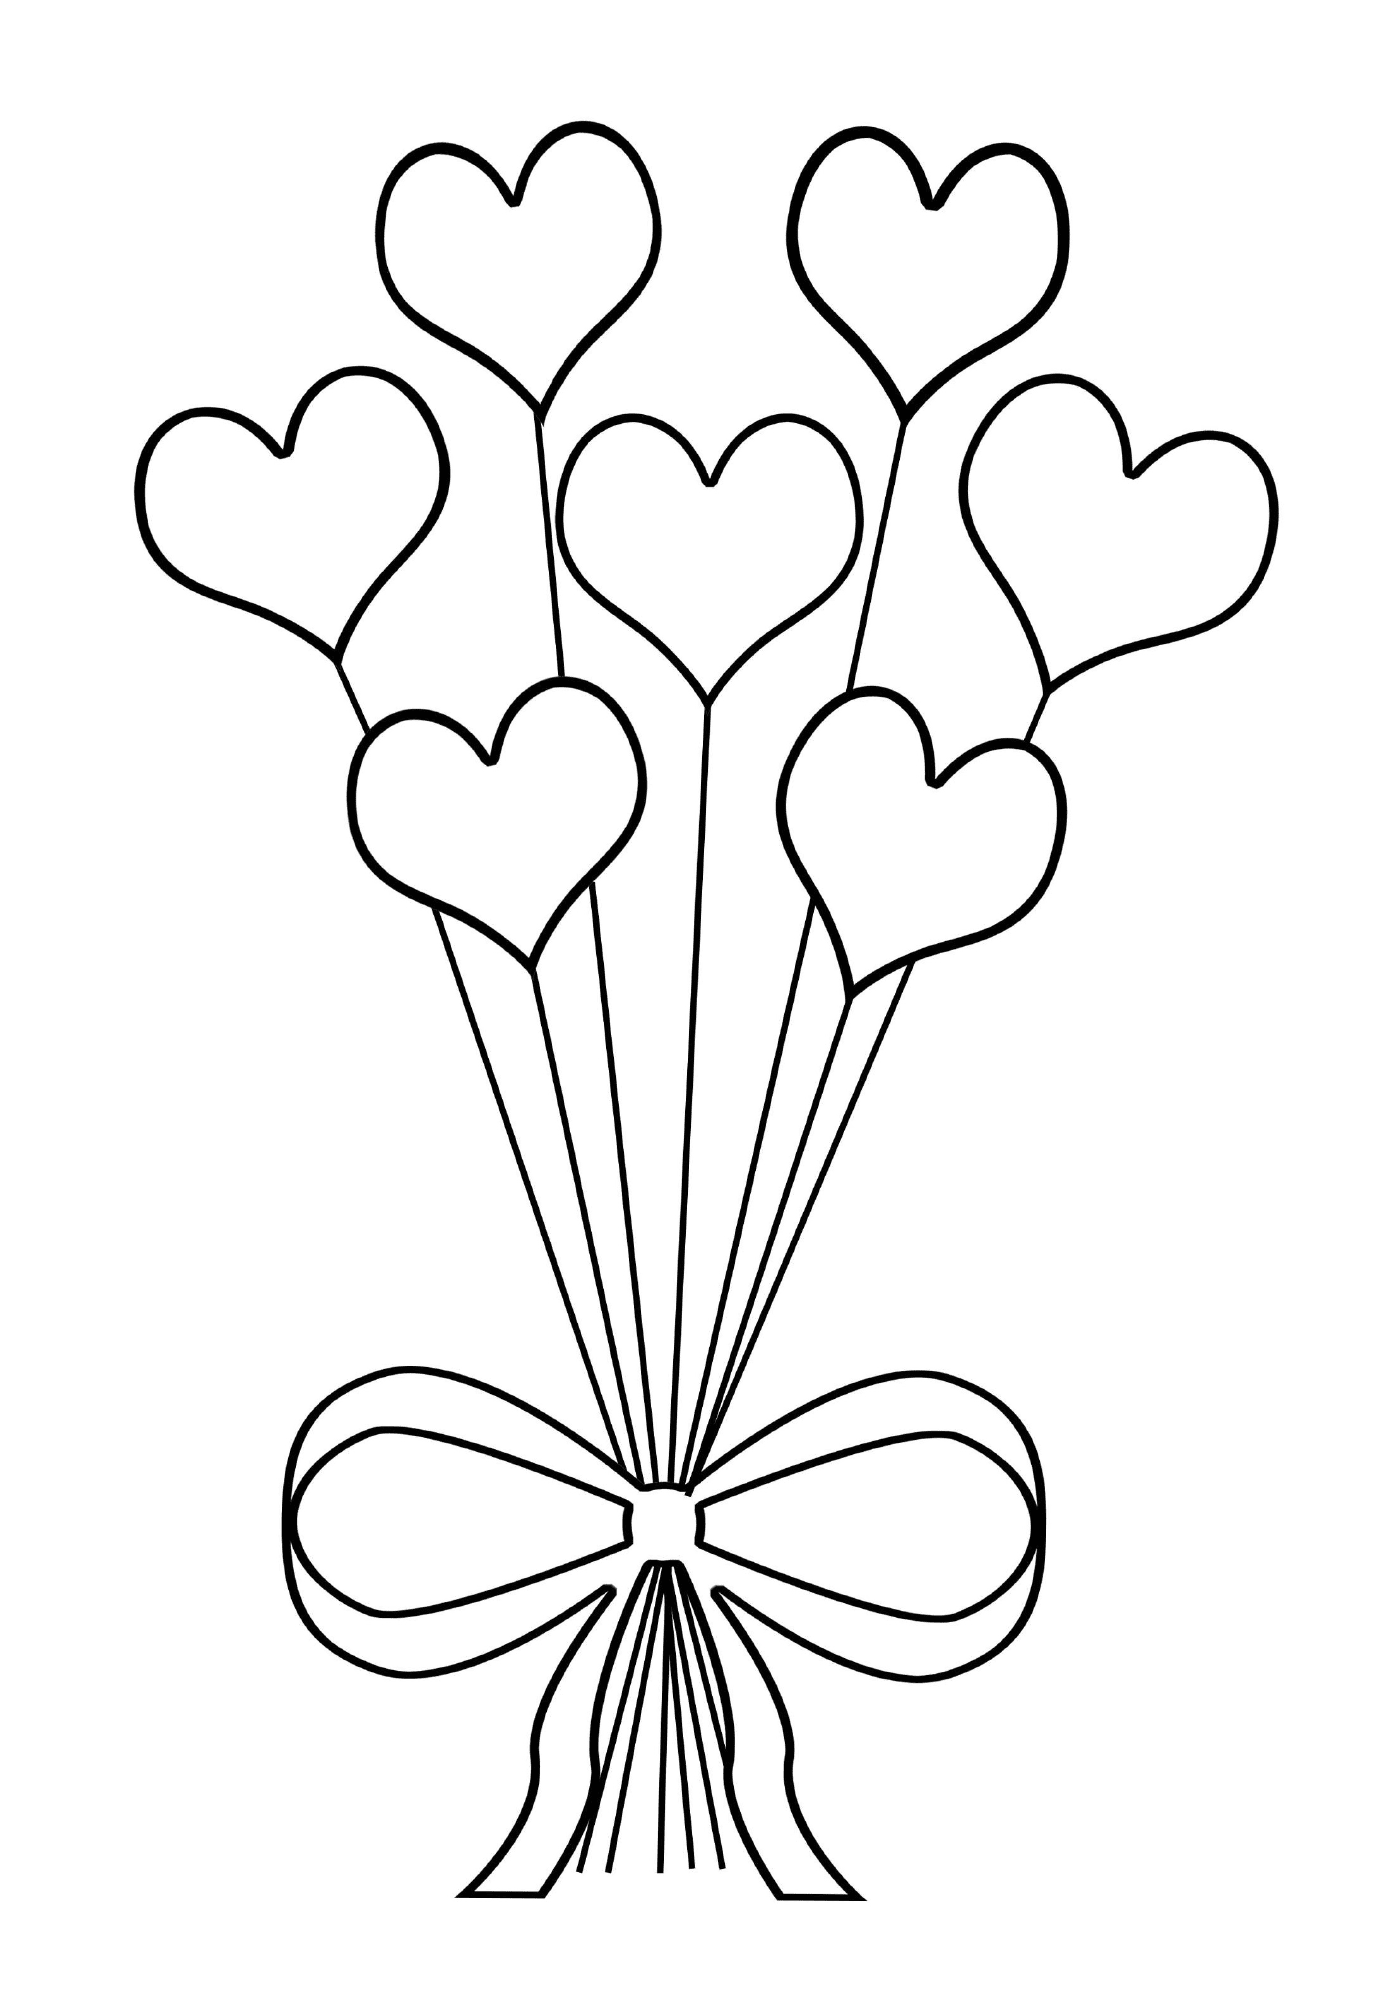  Ein originelles Bouquet herzförmiger Blumen 